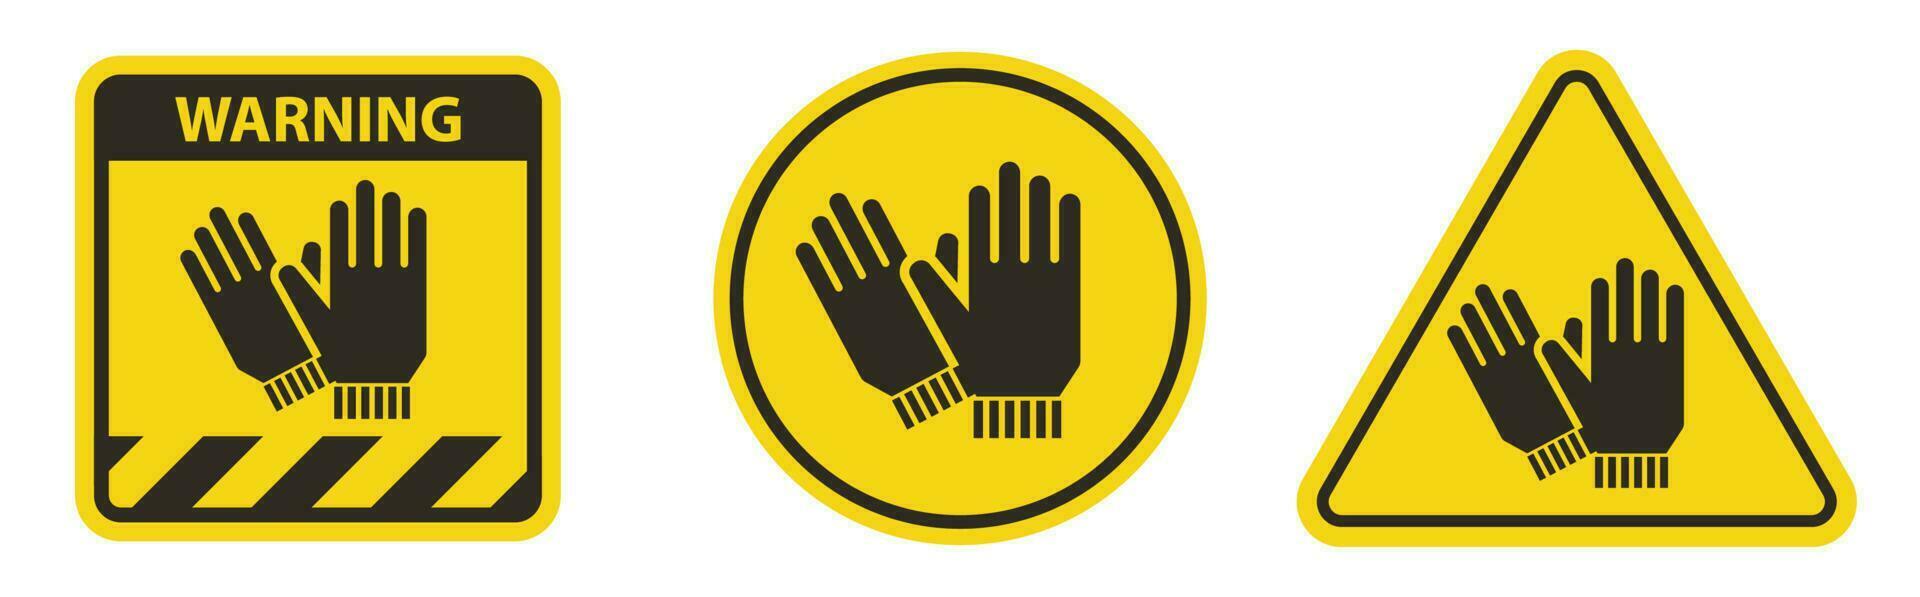 proteção de mãos necessária sinal em fundo branco vetor